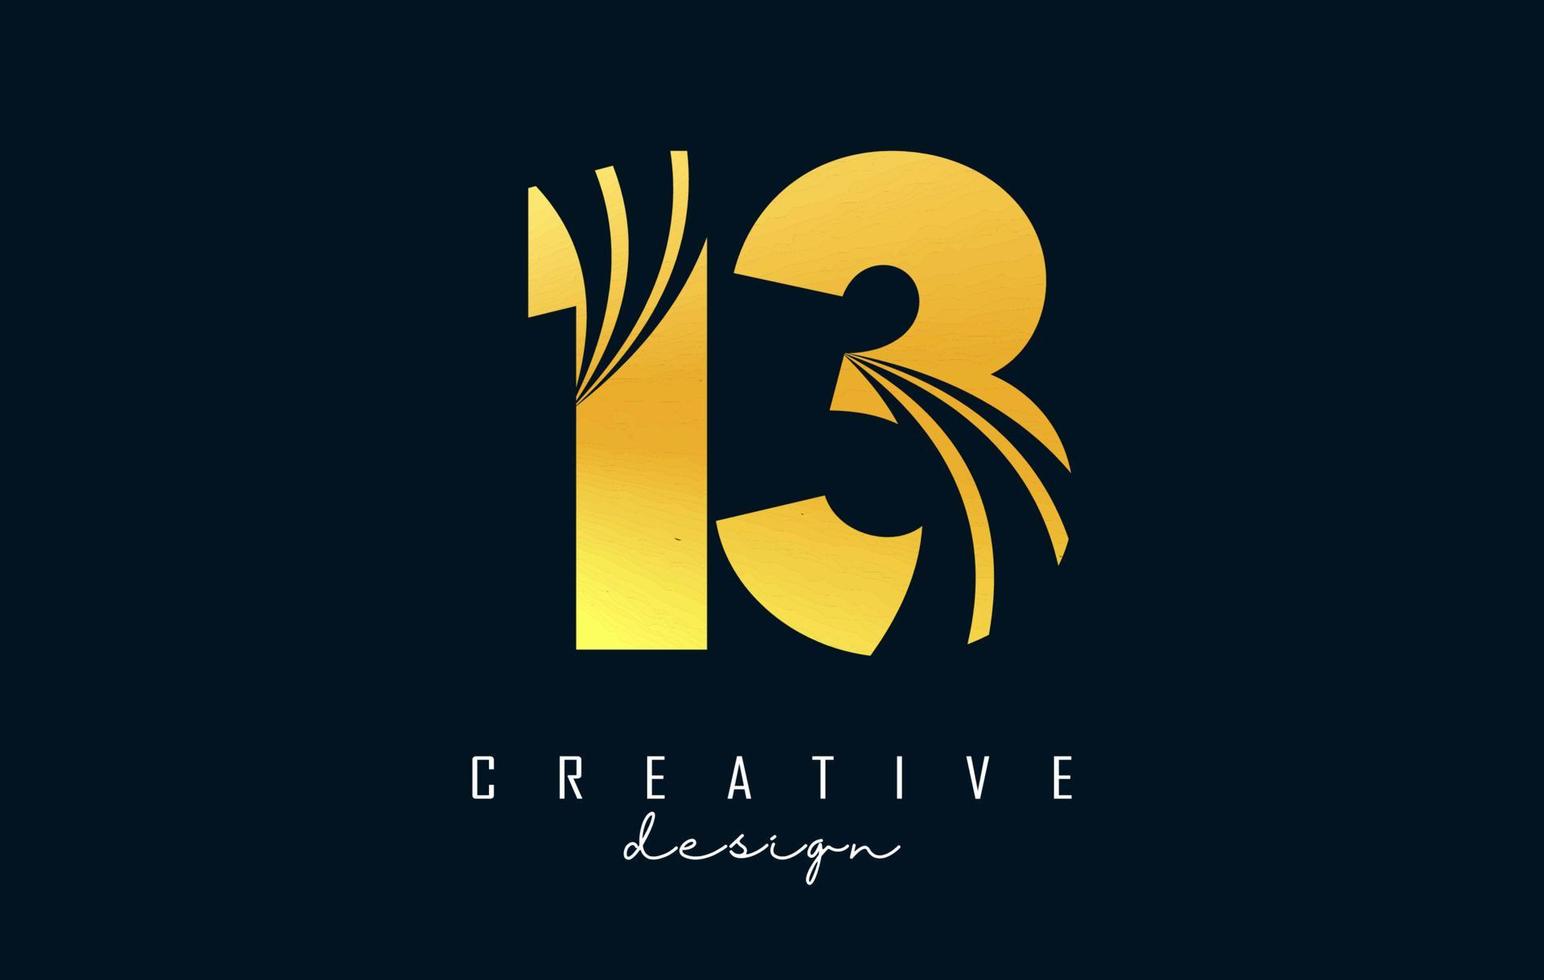 gouden creatief aantal 13 1 3 logo met leidend lijnen en weg concept ontwerp. aantal met meetkundig ontwerp. vector